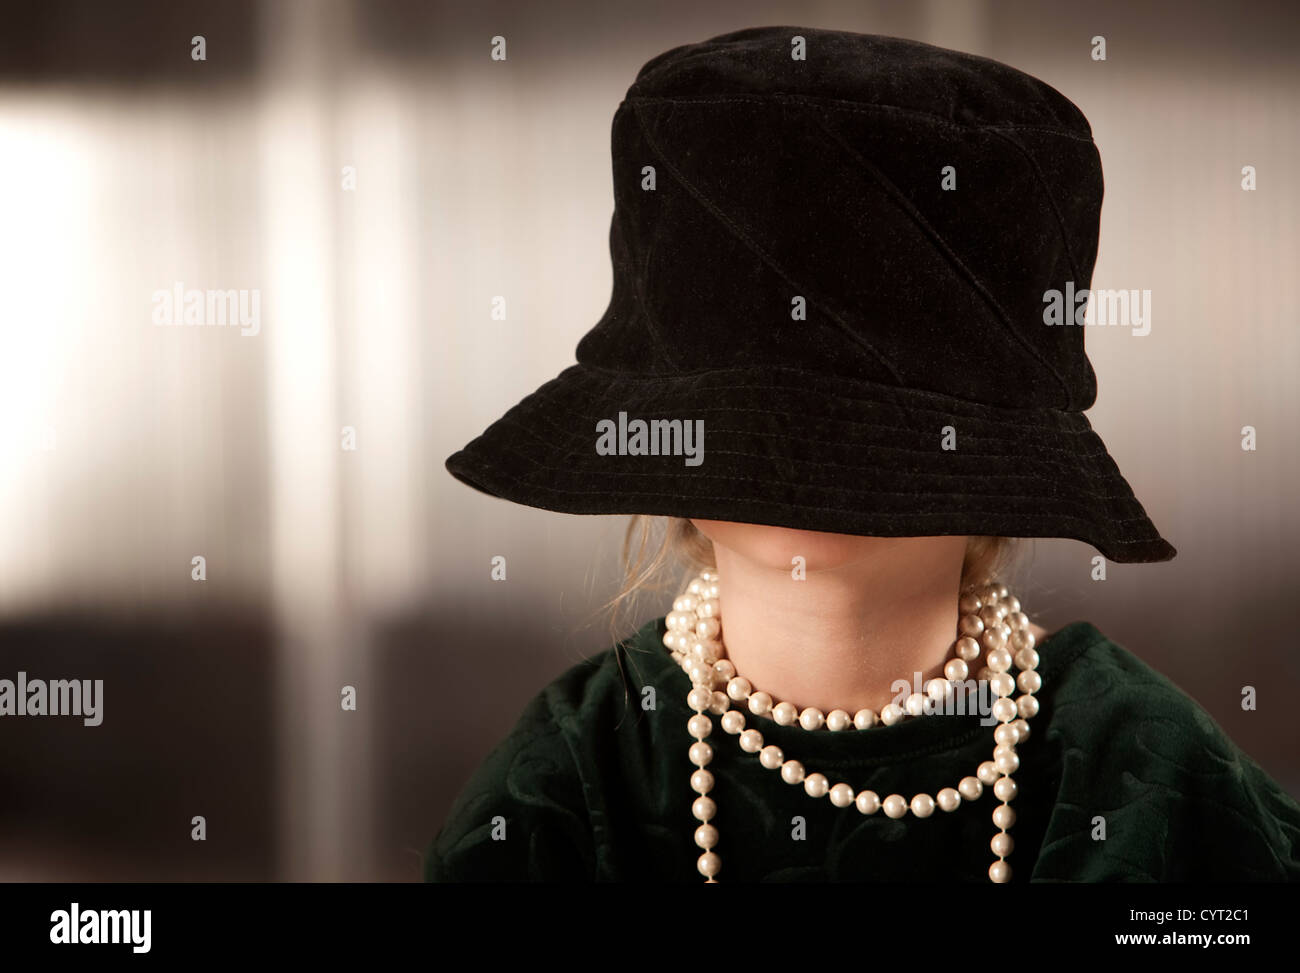 She hat got. Шляпа с закрытым лицом. Скрытое лицо в шляпе. Женщина в шляпе закрывающей лицо. Пират прикрывает лицо шляпой.